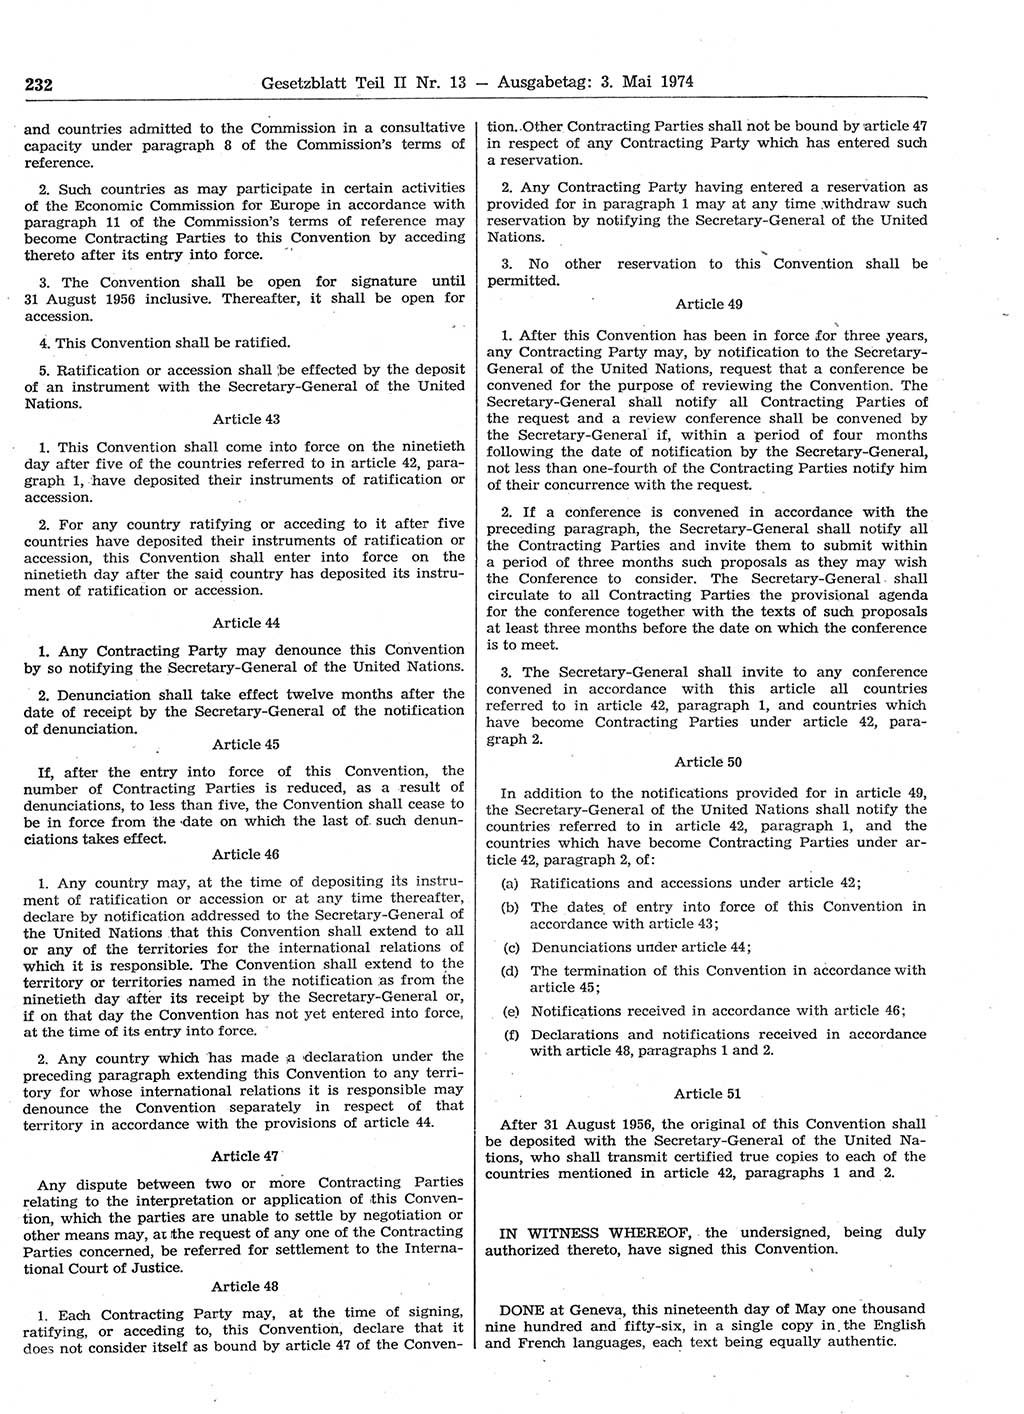 Gesetzblatt (GBl.) der Deutschen Demokratischen Republik (DDR) Teil ⅠⅠ 1974, Seite 232 (GBl. DDR ⅠⅠ 1974, S. 232)